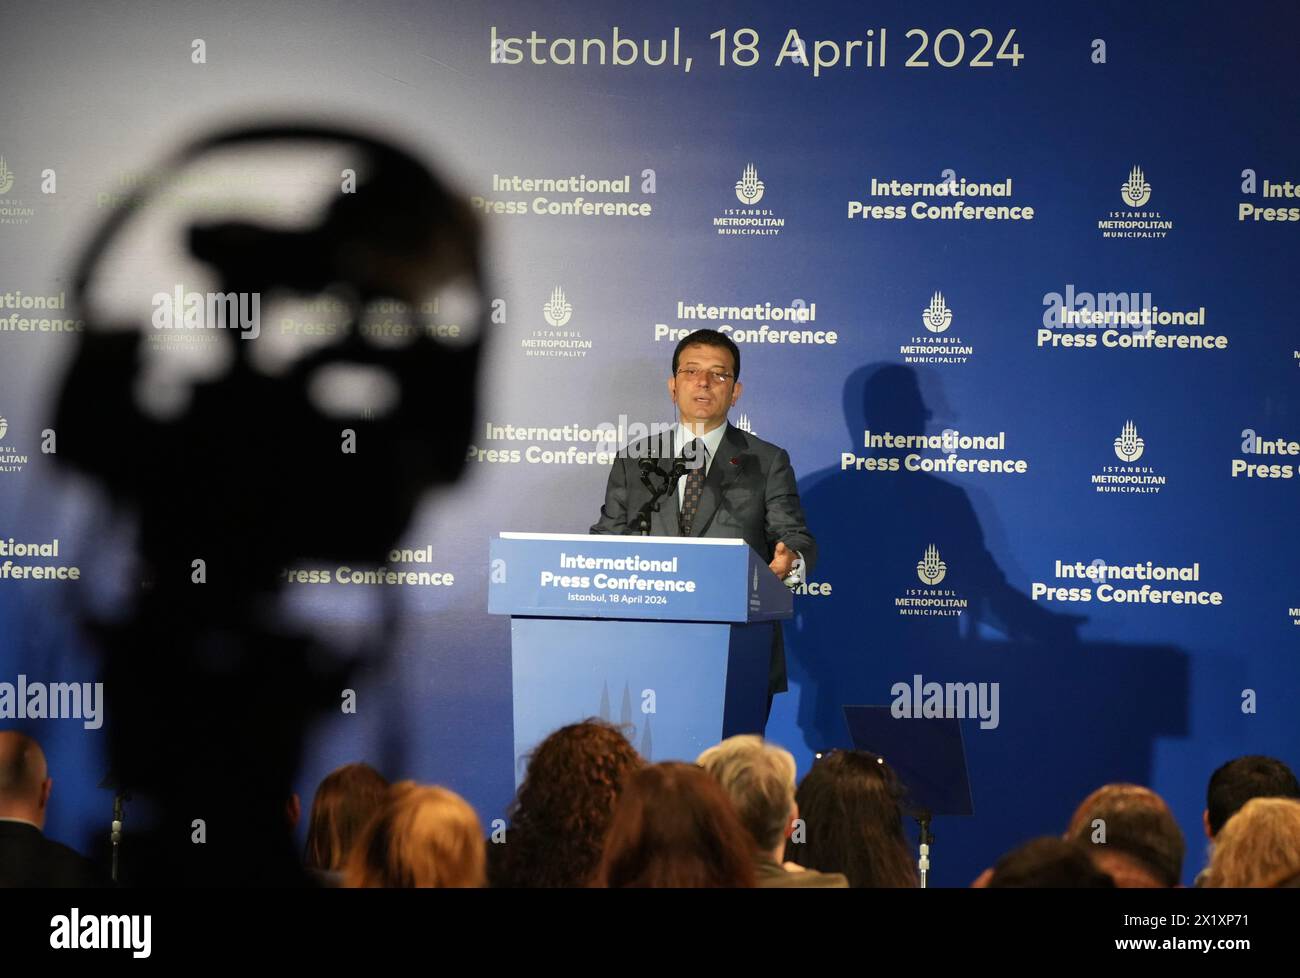 Eine Pressekonferenz für die internationalen Medien des neu gewählten Istanbuler Bürgermeisters Ekrem Imamoglu, Istanbul, Türkei, 18. April 2024. (CTK-Foto/Pavel Neme Stockfoto